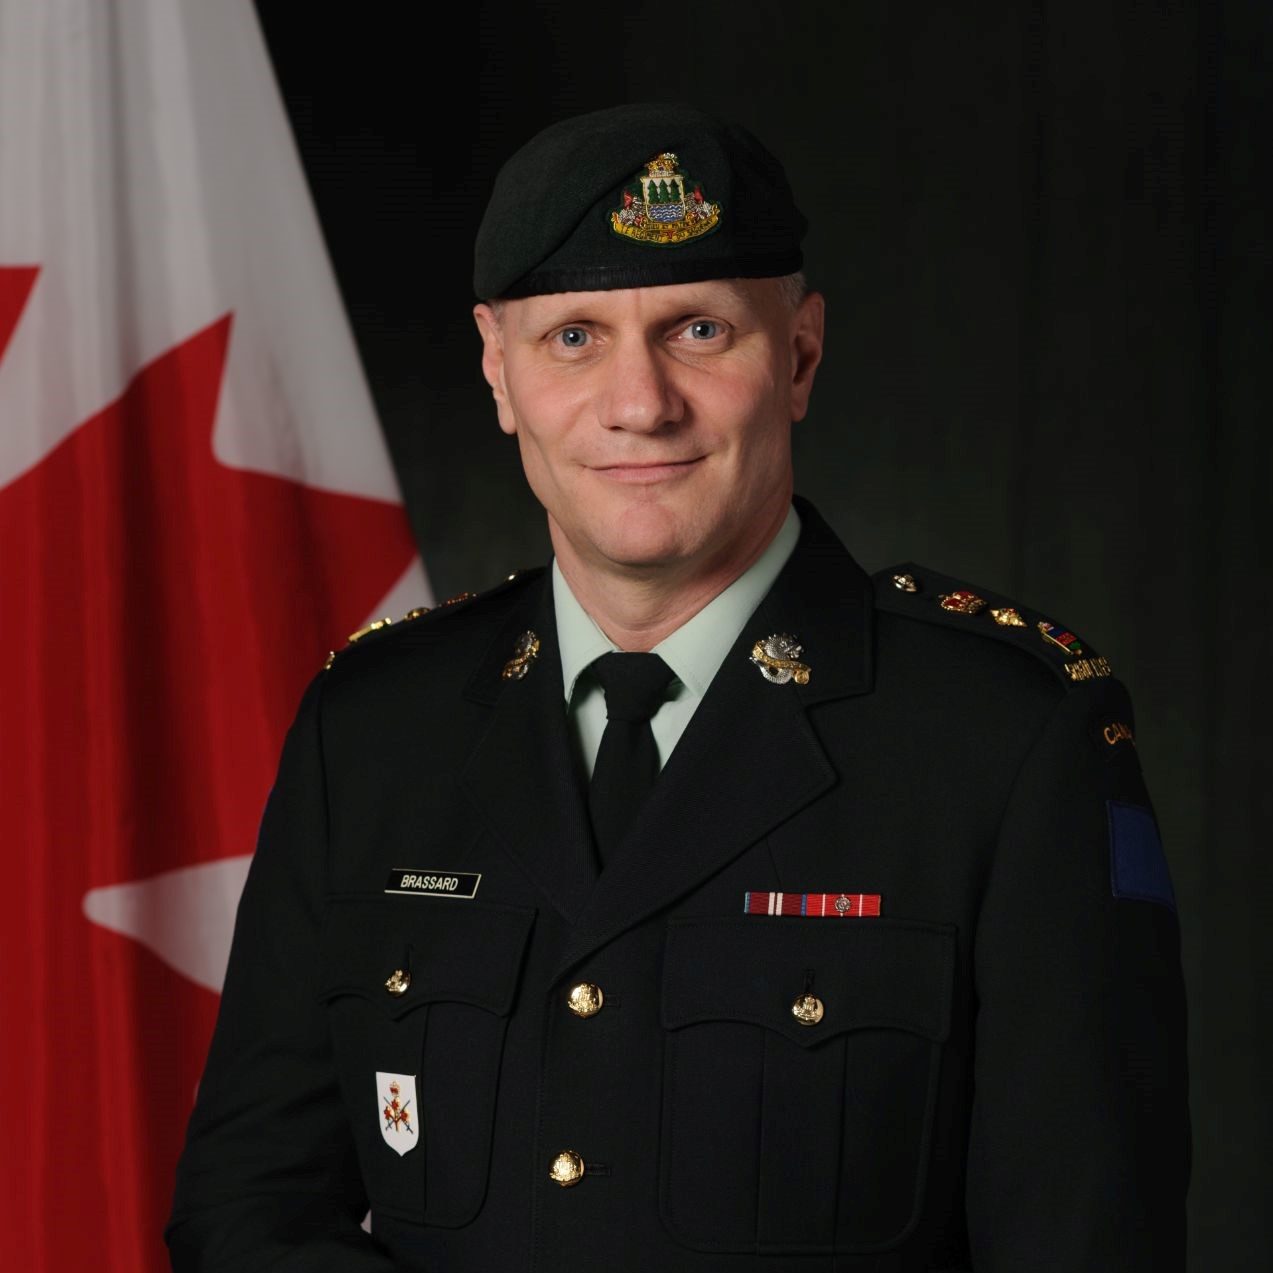 Lieutenant-colonel Brassard, CD